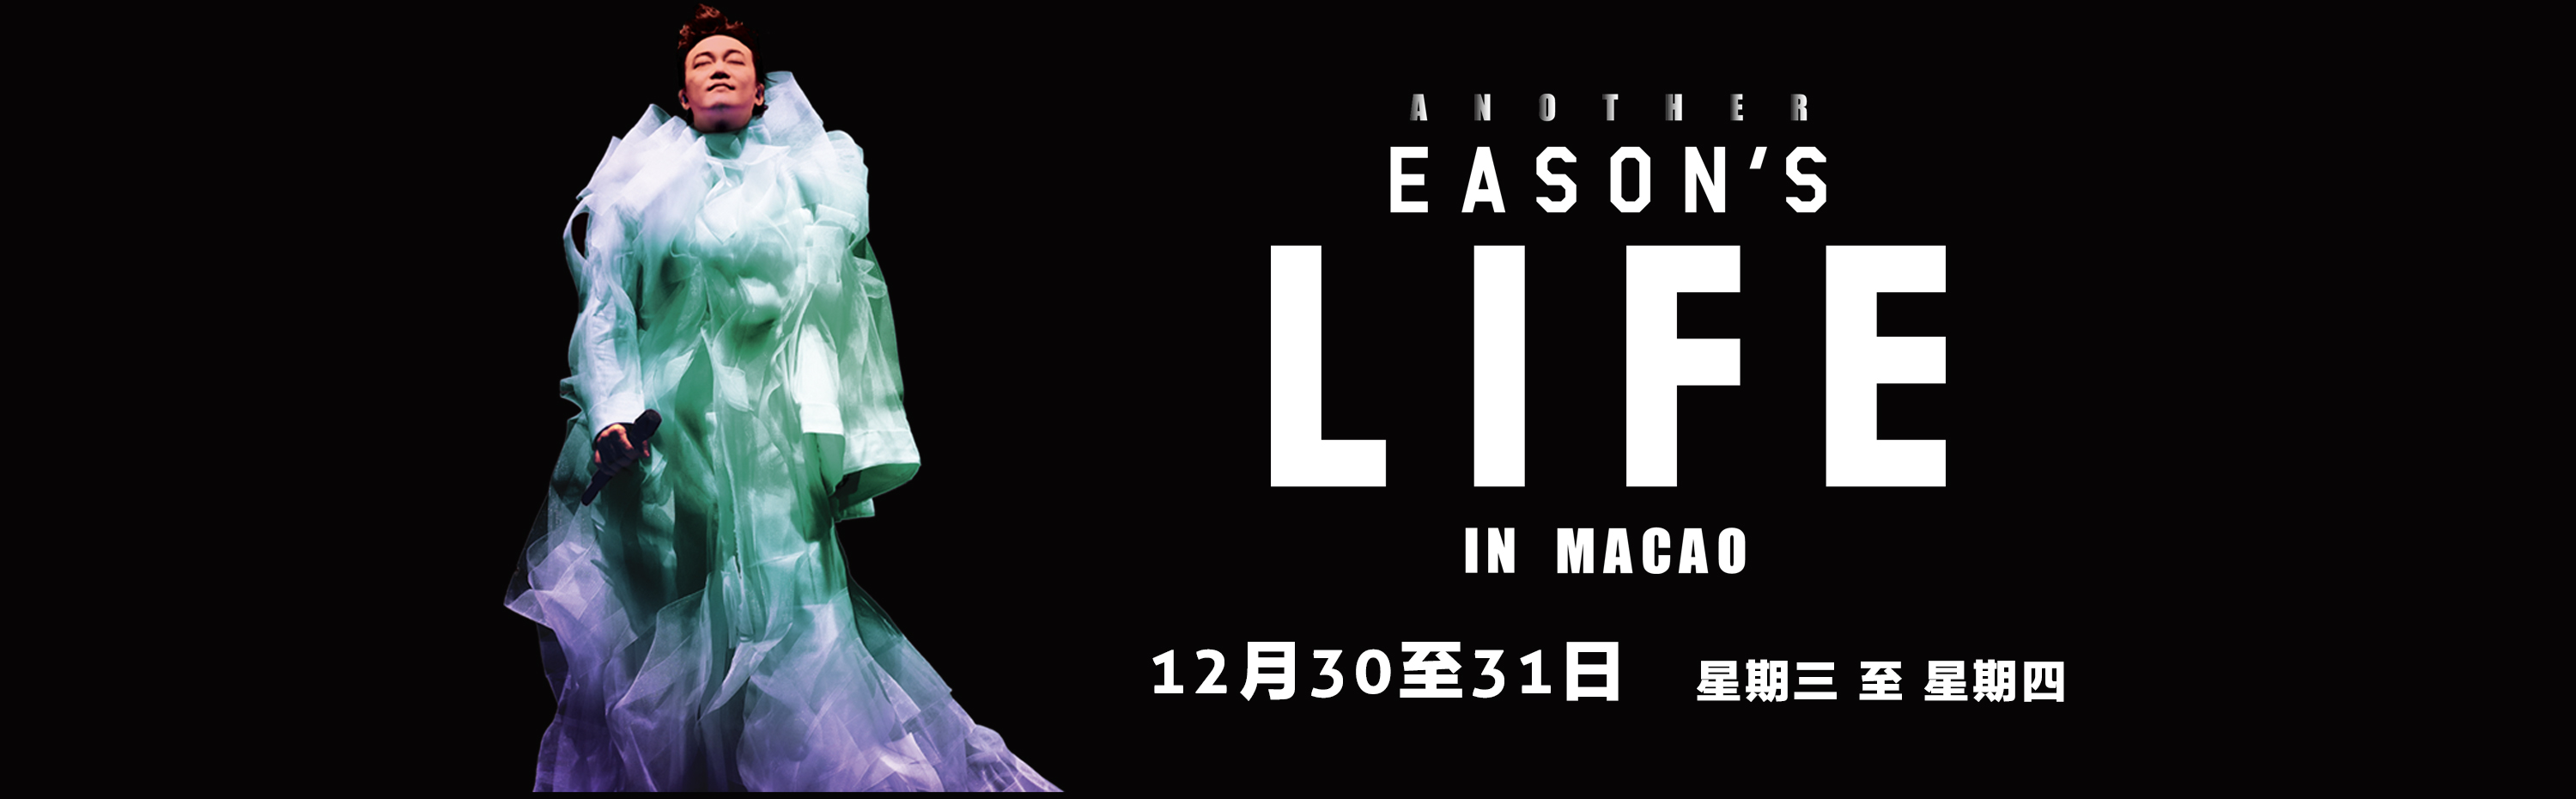 陈奕迅澳门Another Eason's Life in Macao 